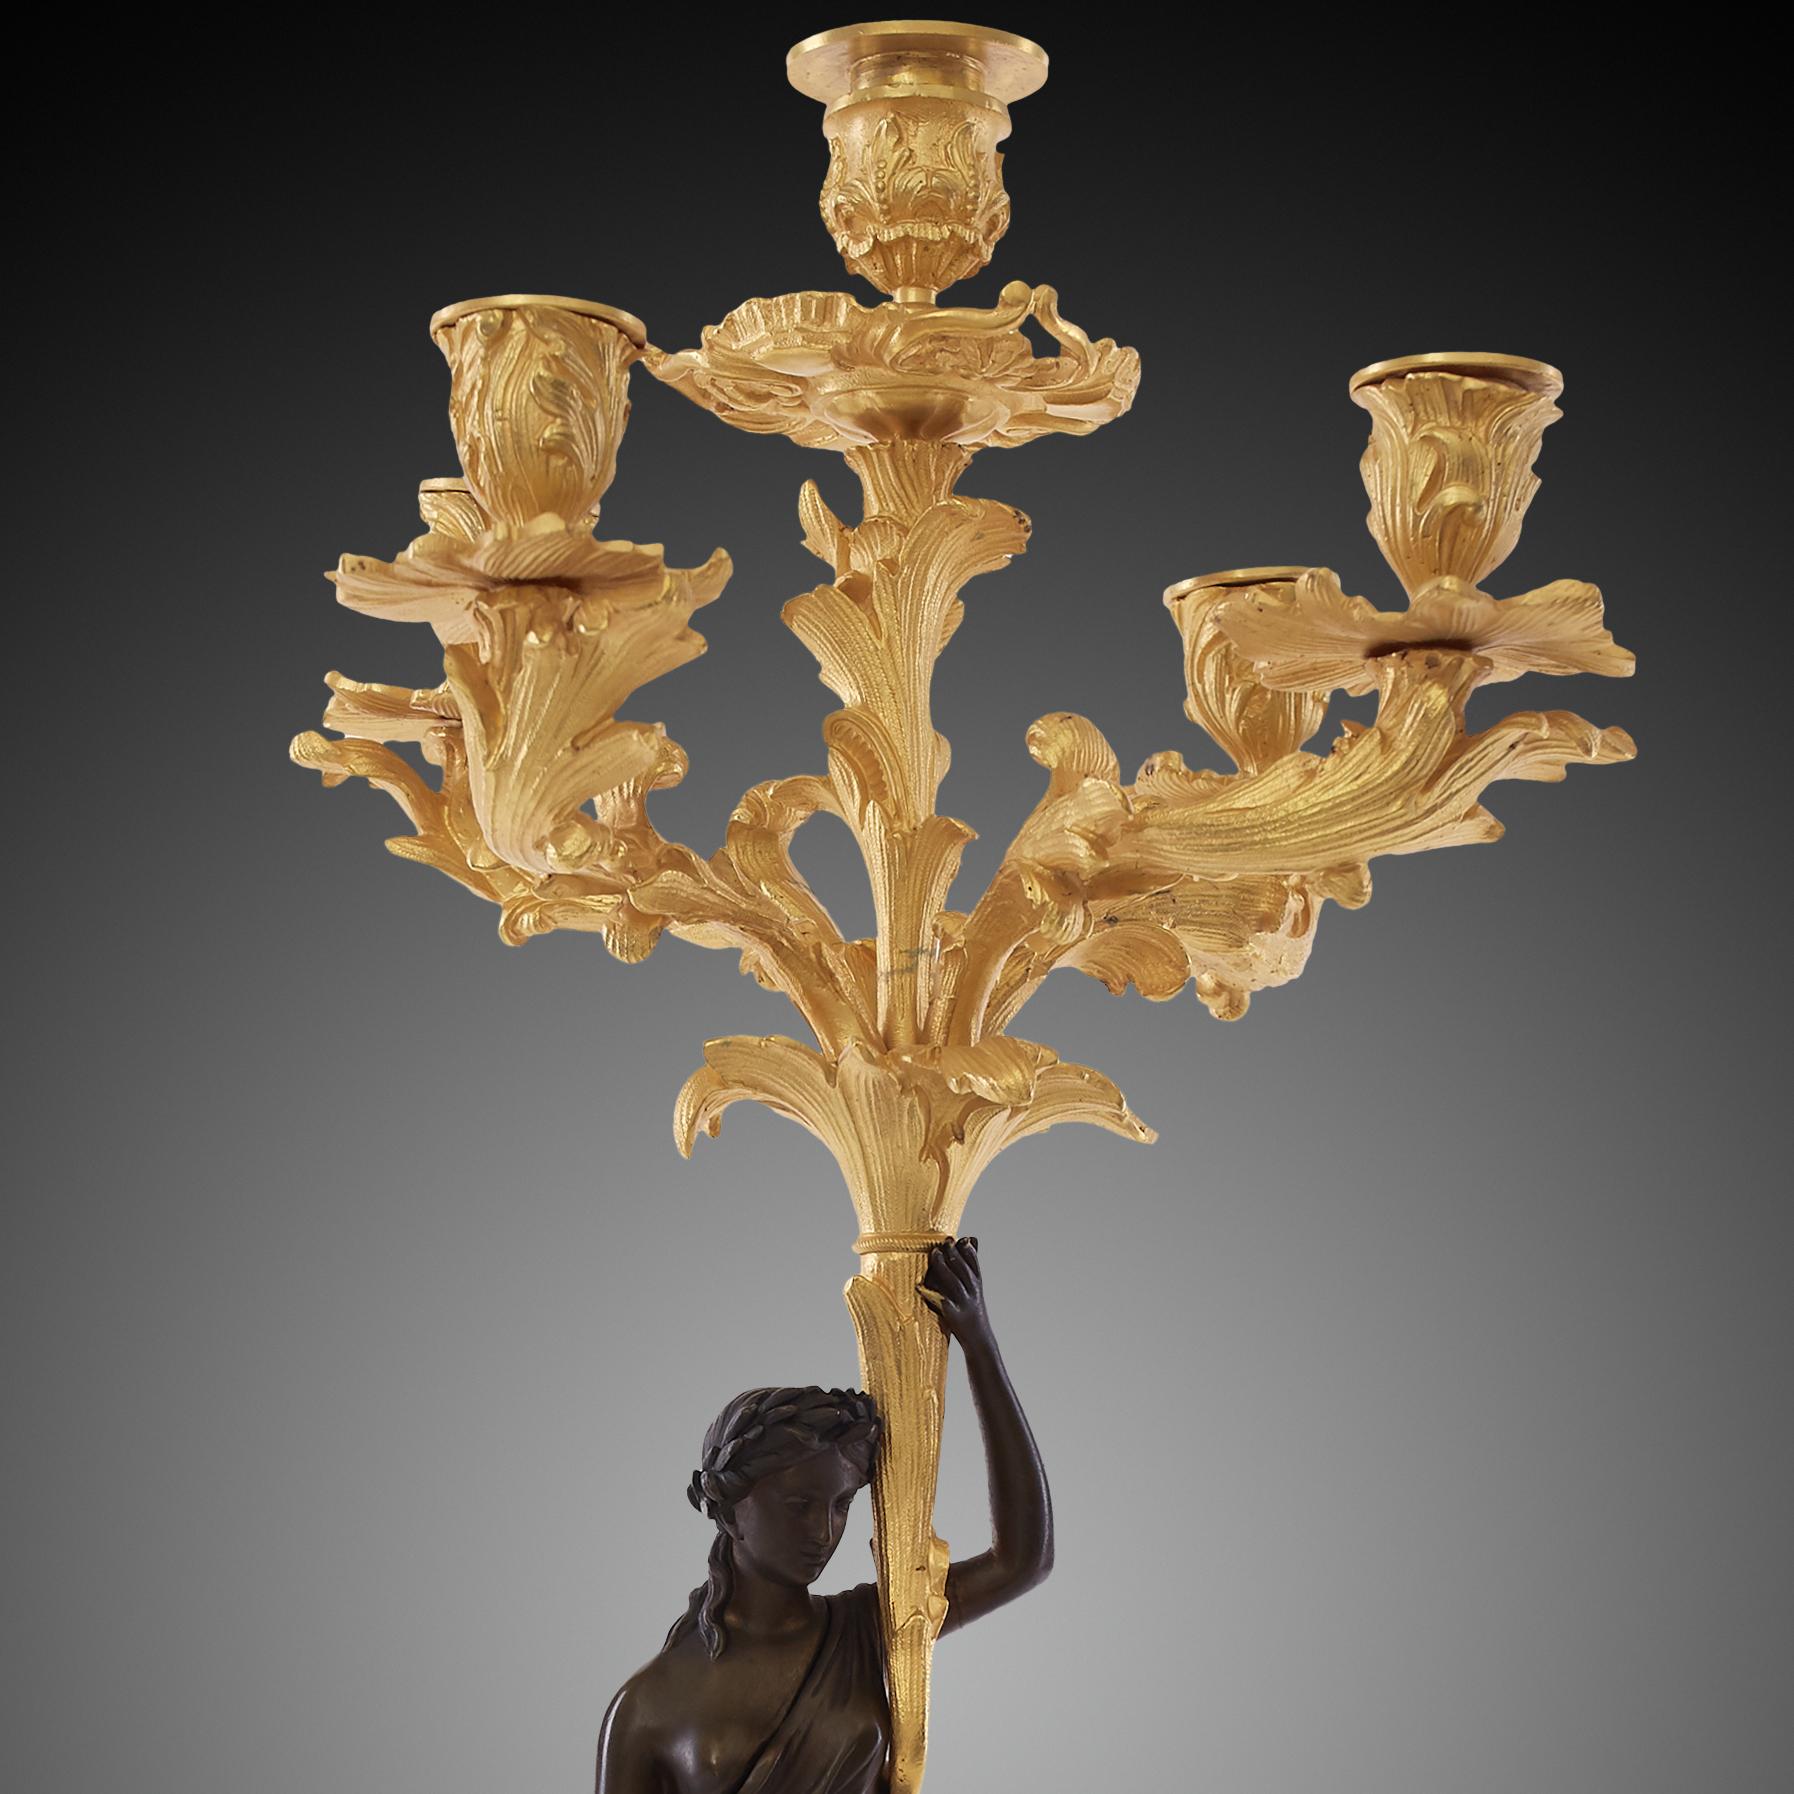 Il s'agit d'une paire de candélabres dorés inspirés du style Louis XVI, un style originaire de France. La tige principale des candélabres est constituée de statues féminines. Contrairement au reste des parties dorées du candélabre, les femmes sont